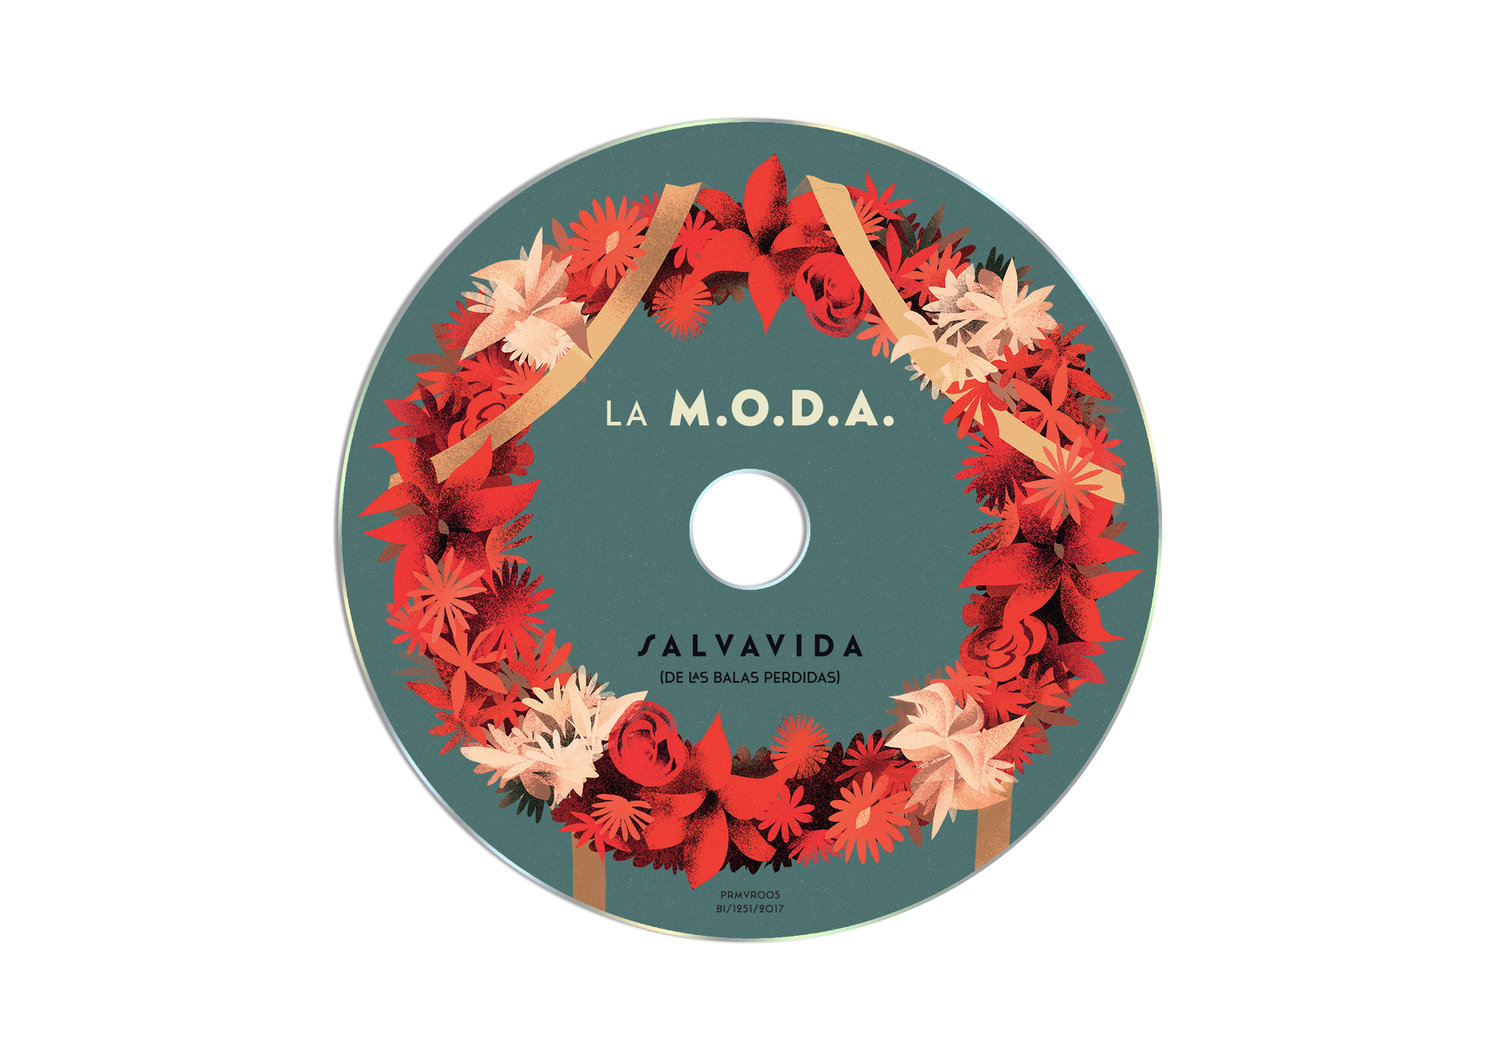 Álbum La M.O.D.A — Jabi Medina